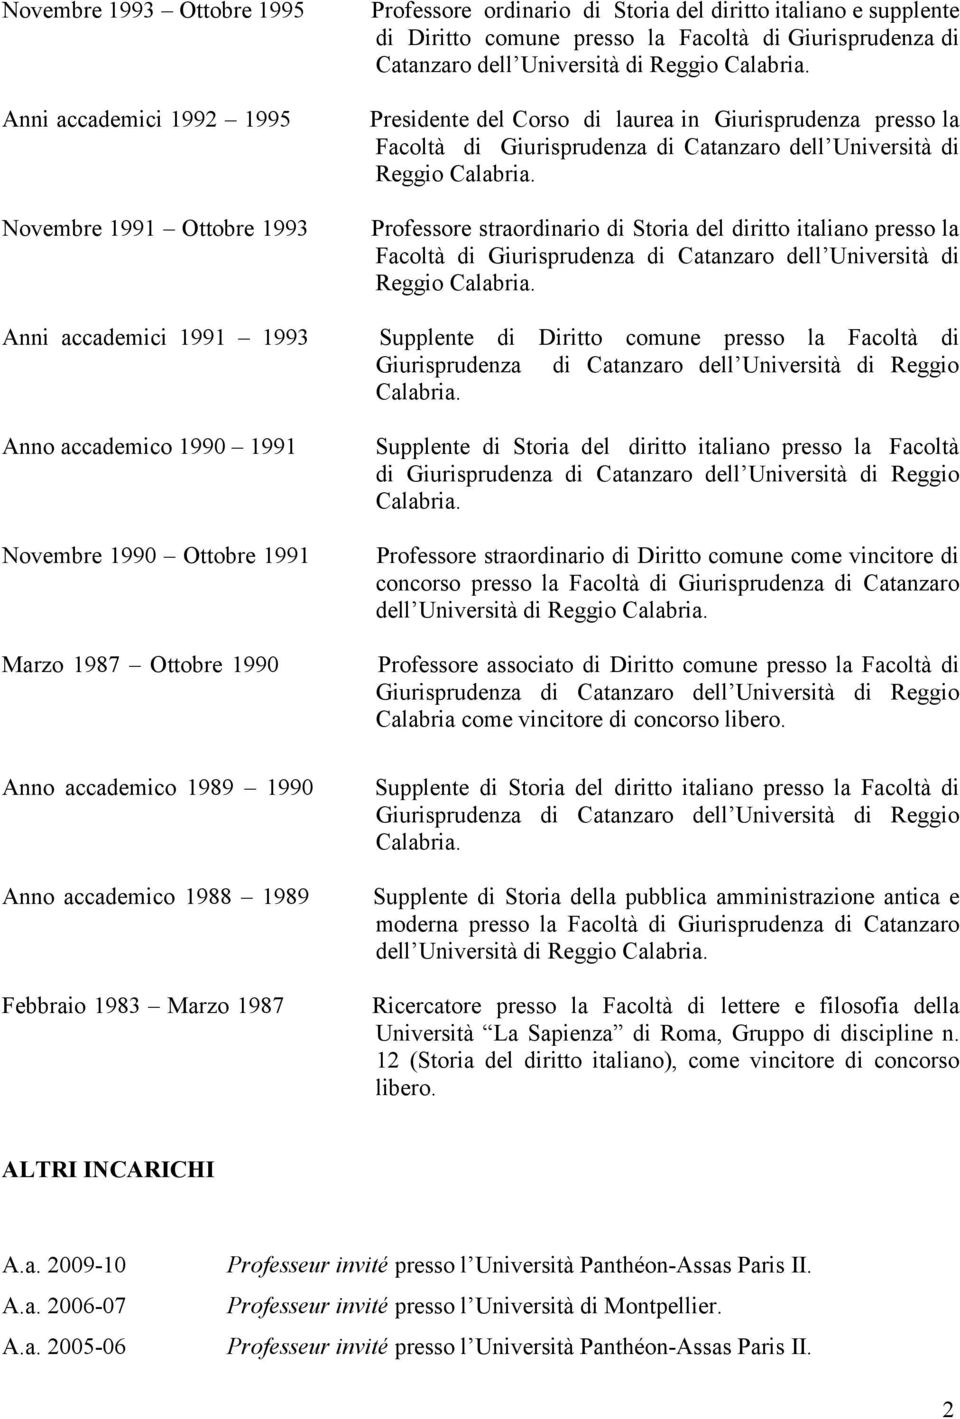 del diritto italiano presso la Facoltà di Giurisprudenza di Catanzaro dell Università di Reggio Anni accademici 1991 1993 Supplente di Diritto comune presso la Facoltà di Anno accademico 1990 1991